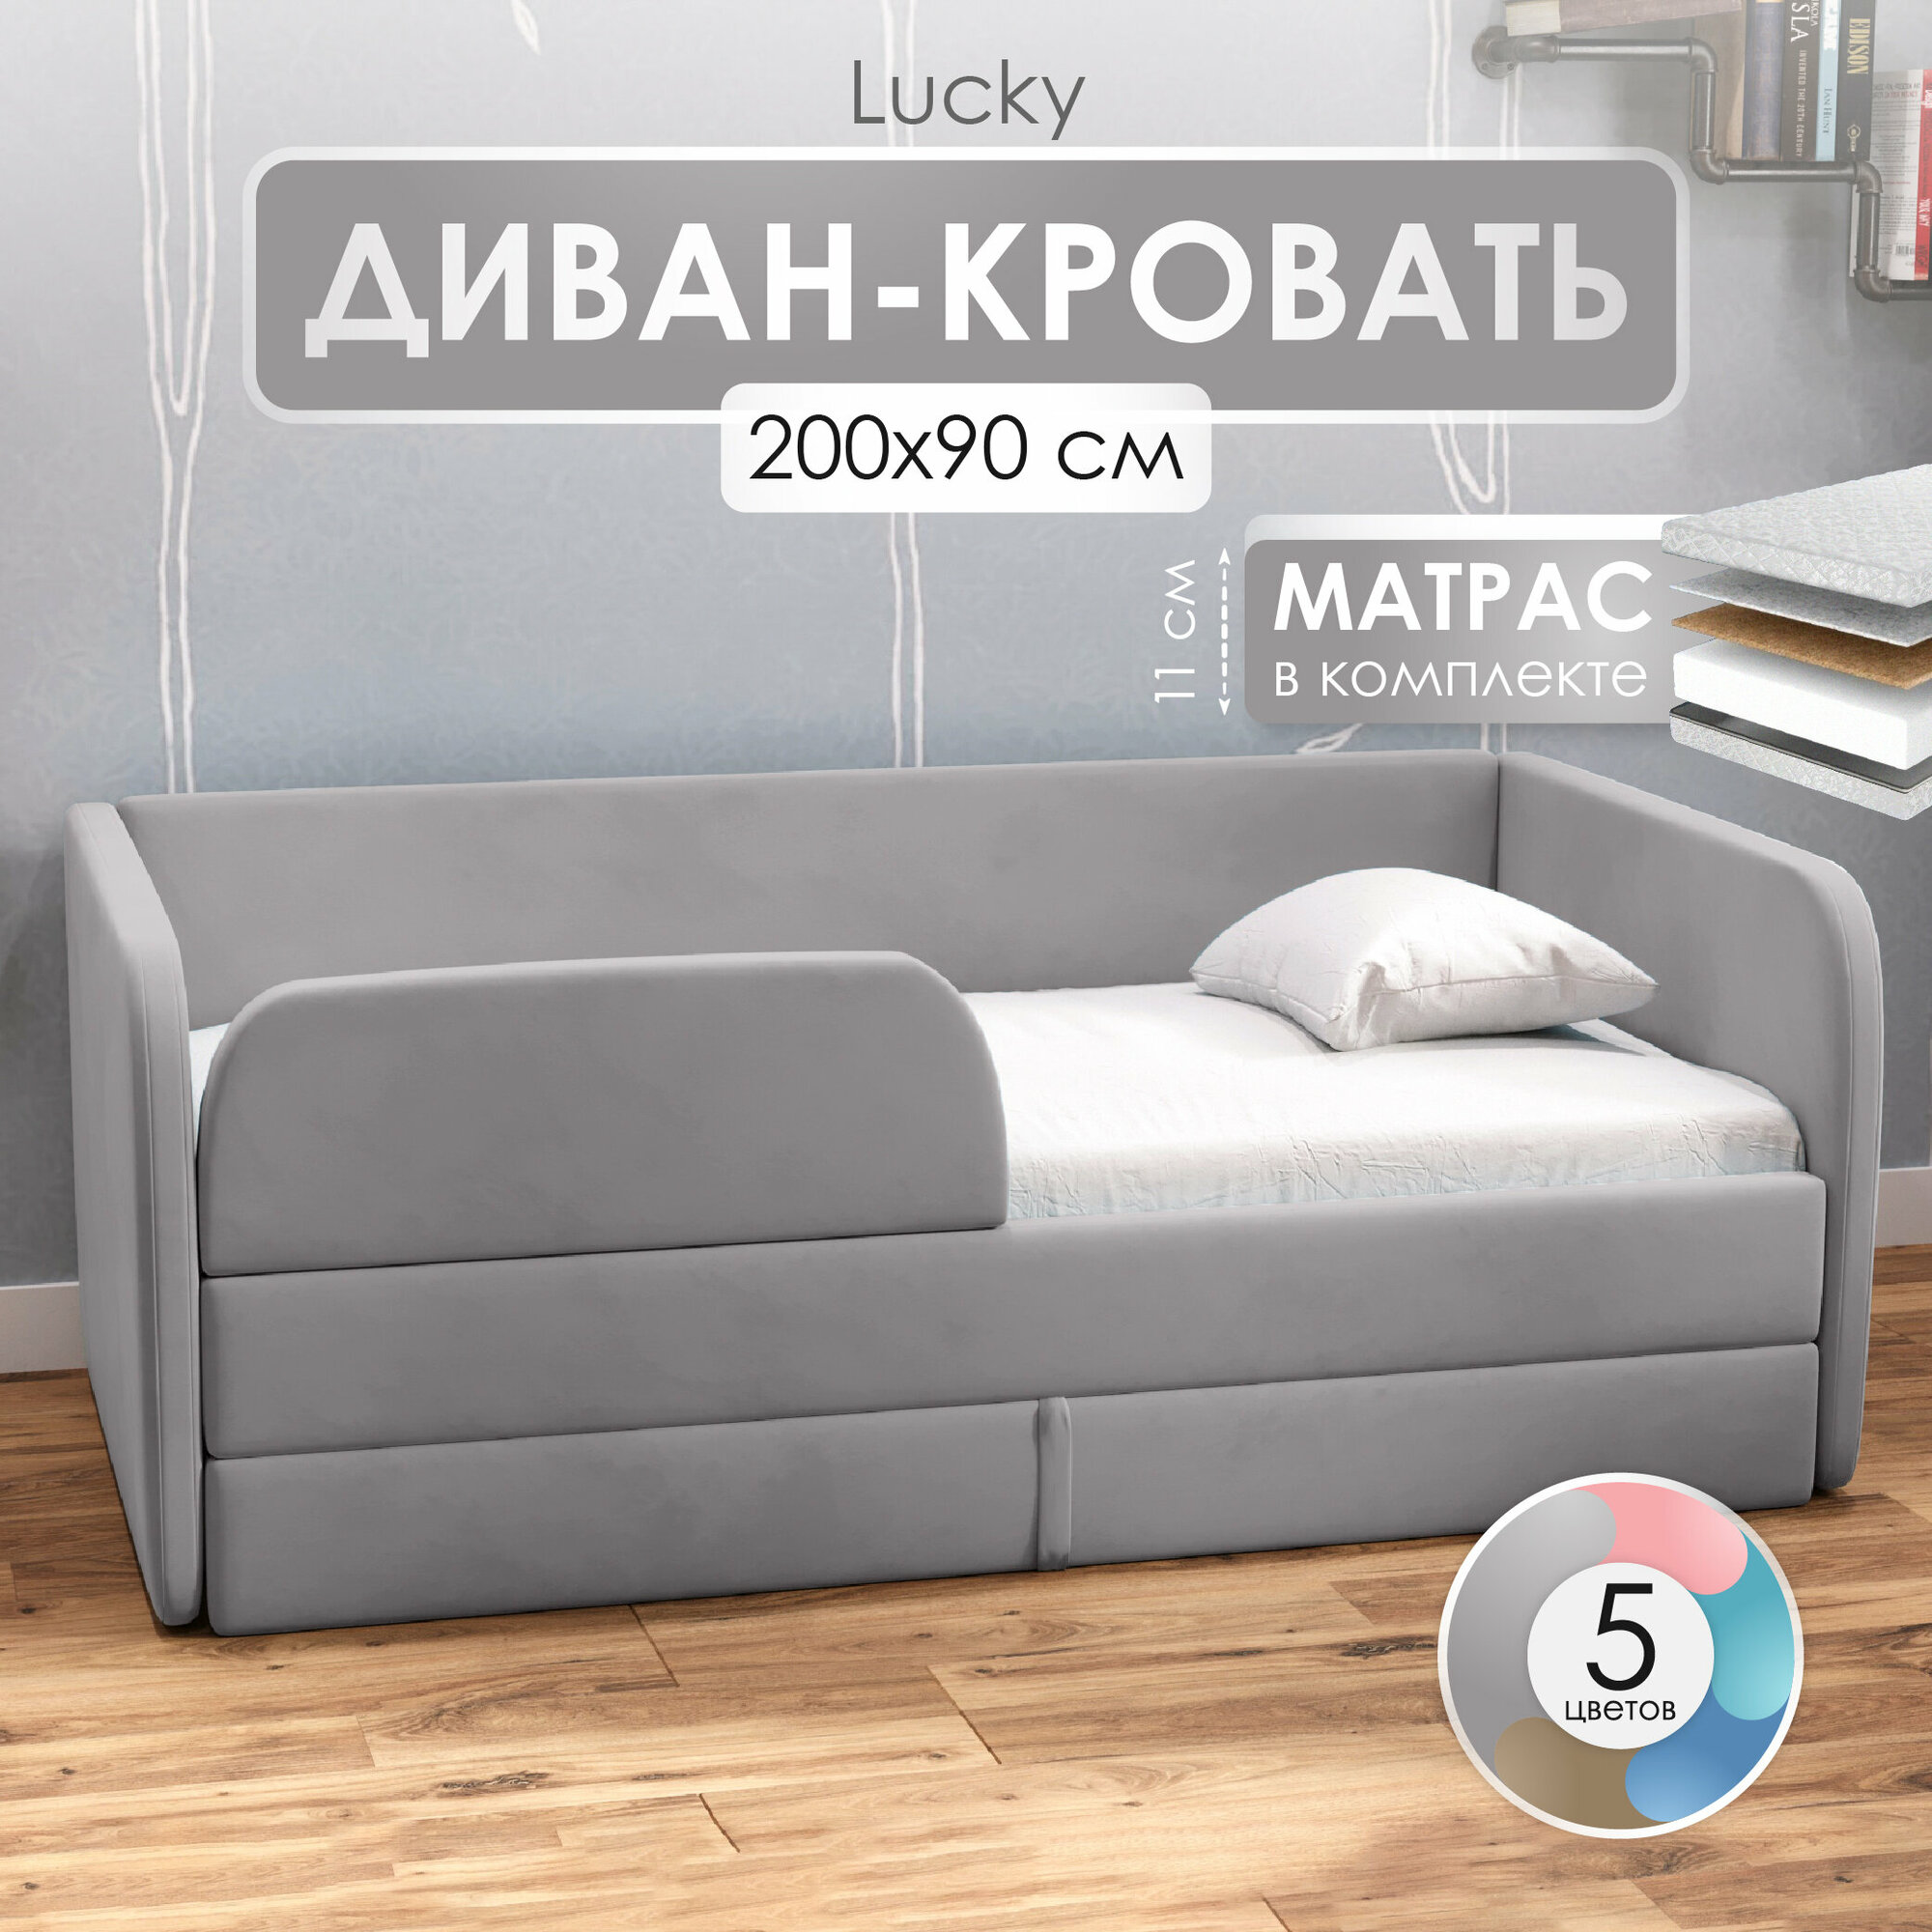 Детский диван кровать с матрасом 200х90 см Lucky Серый, кровать диван от 3 лет с бортиками и выкатным ящиком, тахта кровать односпальная подростковая